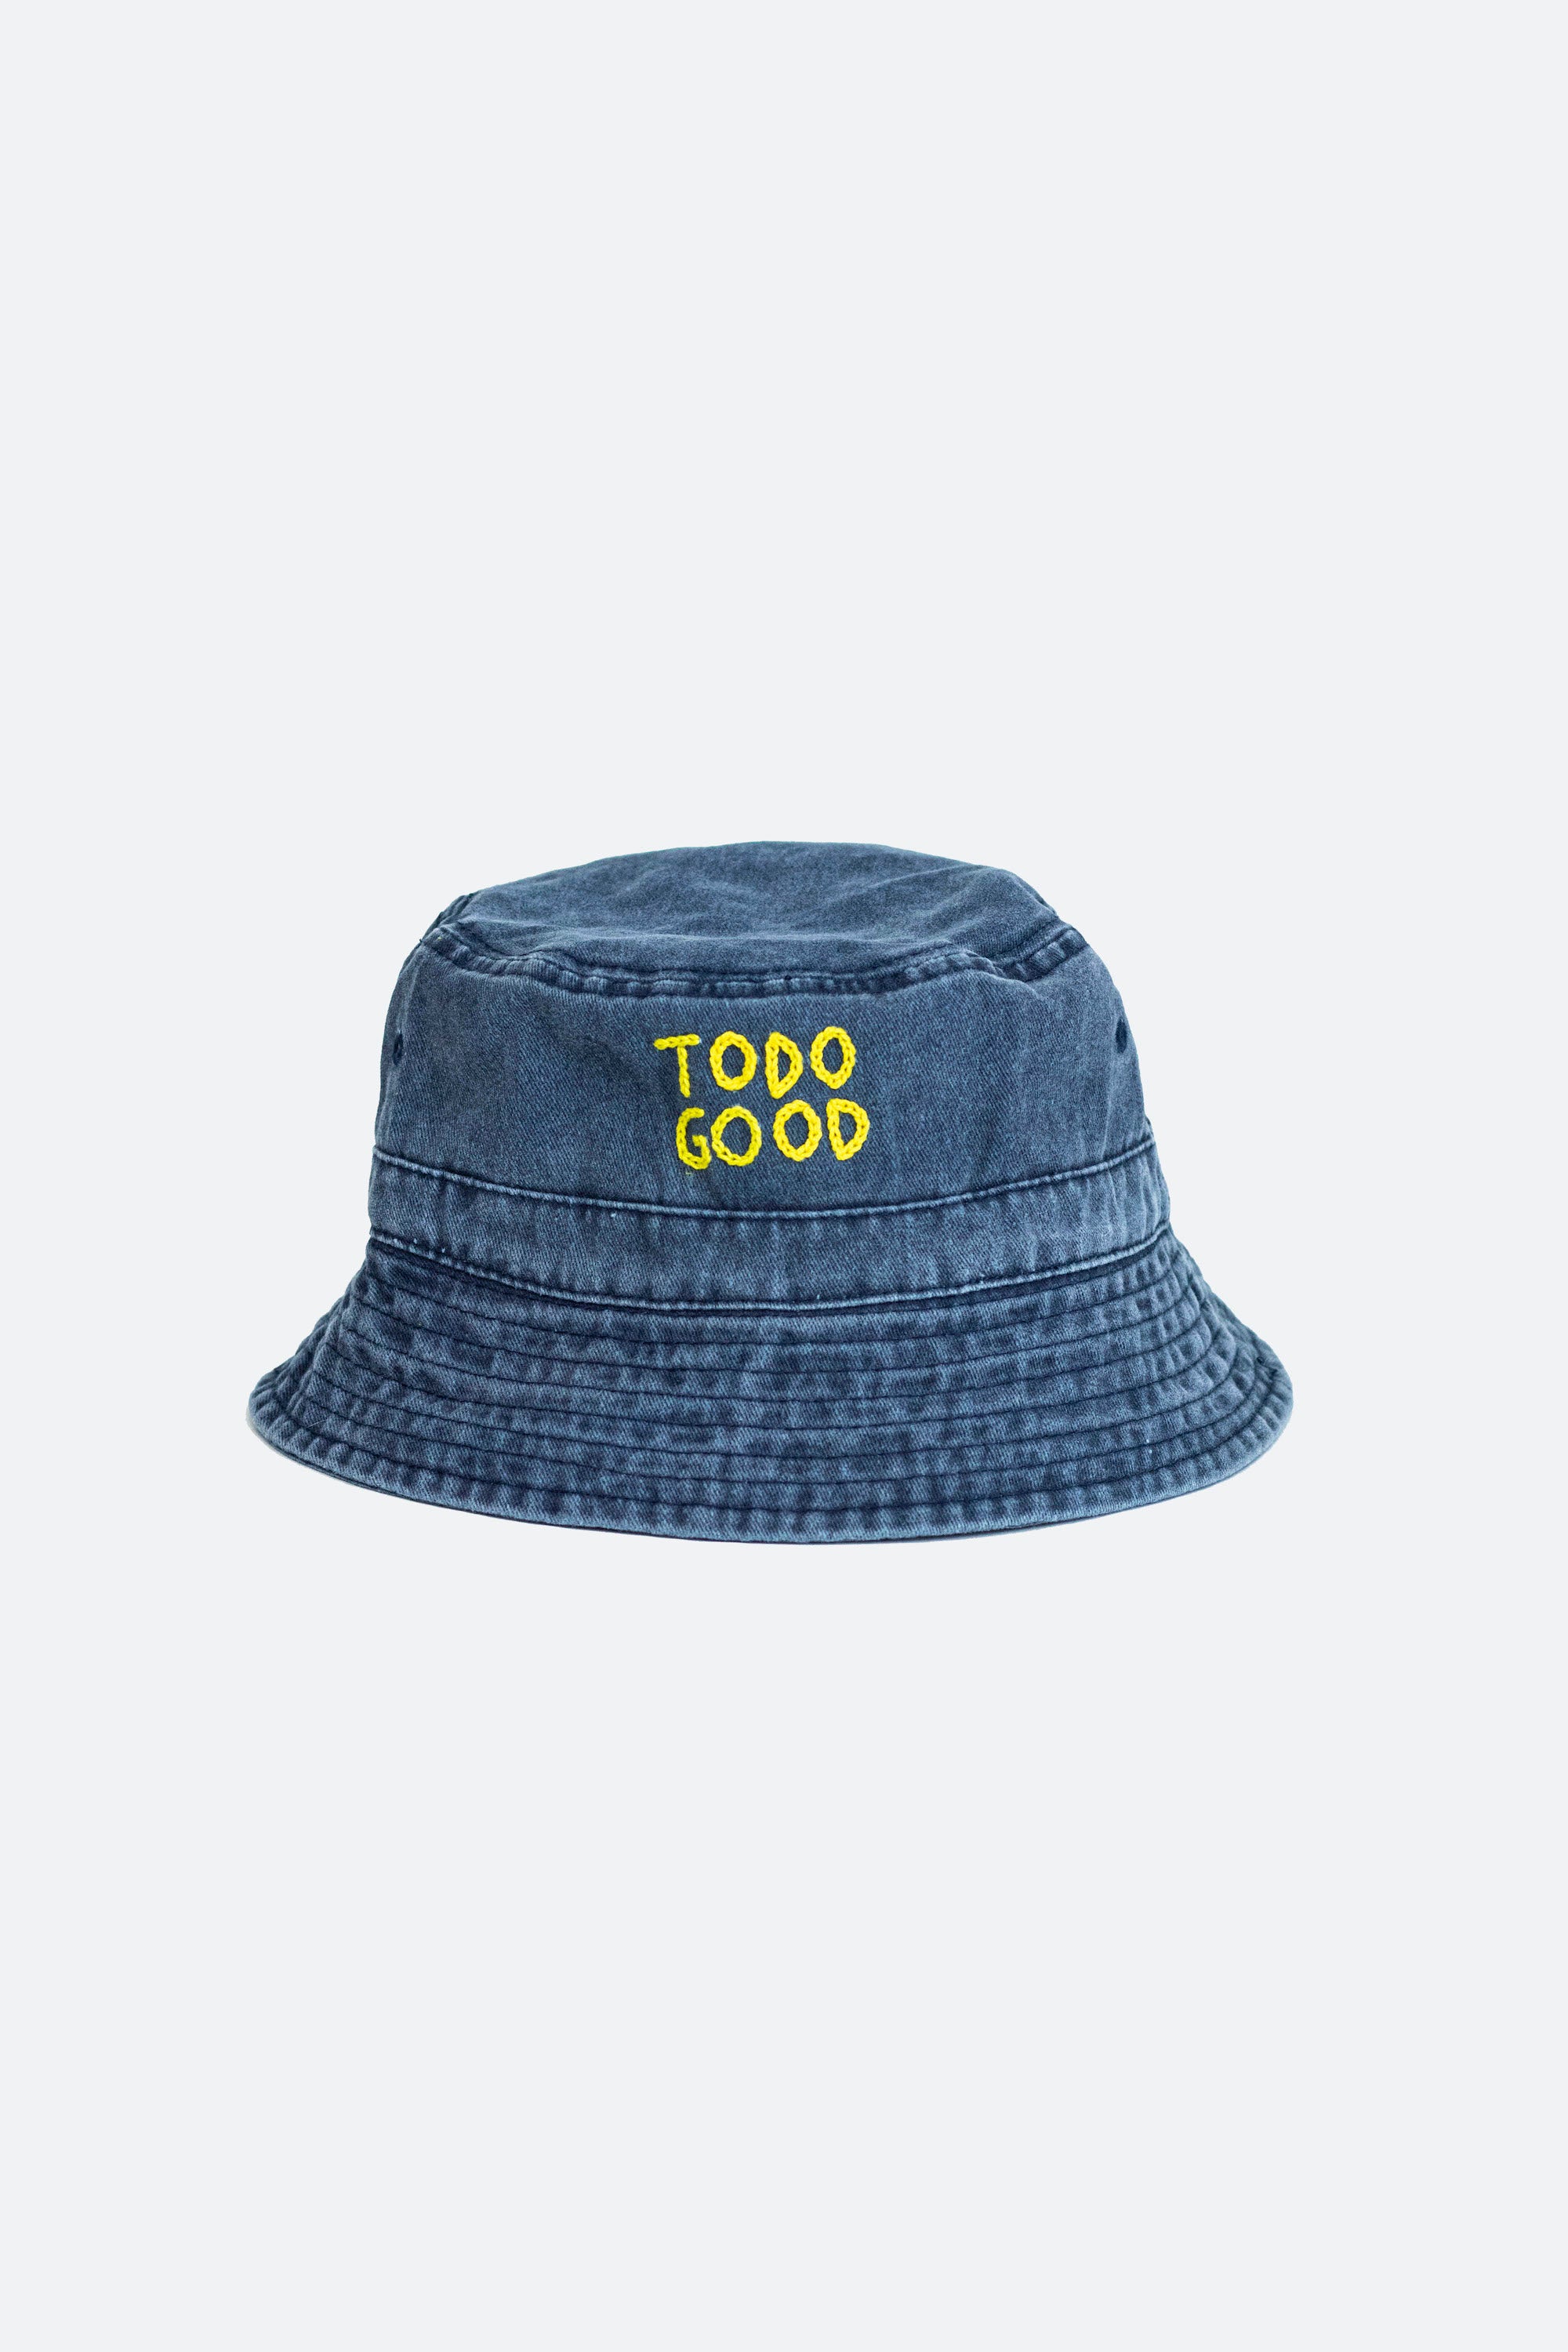 TODO GOOD BUCKET HAT